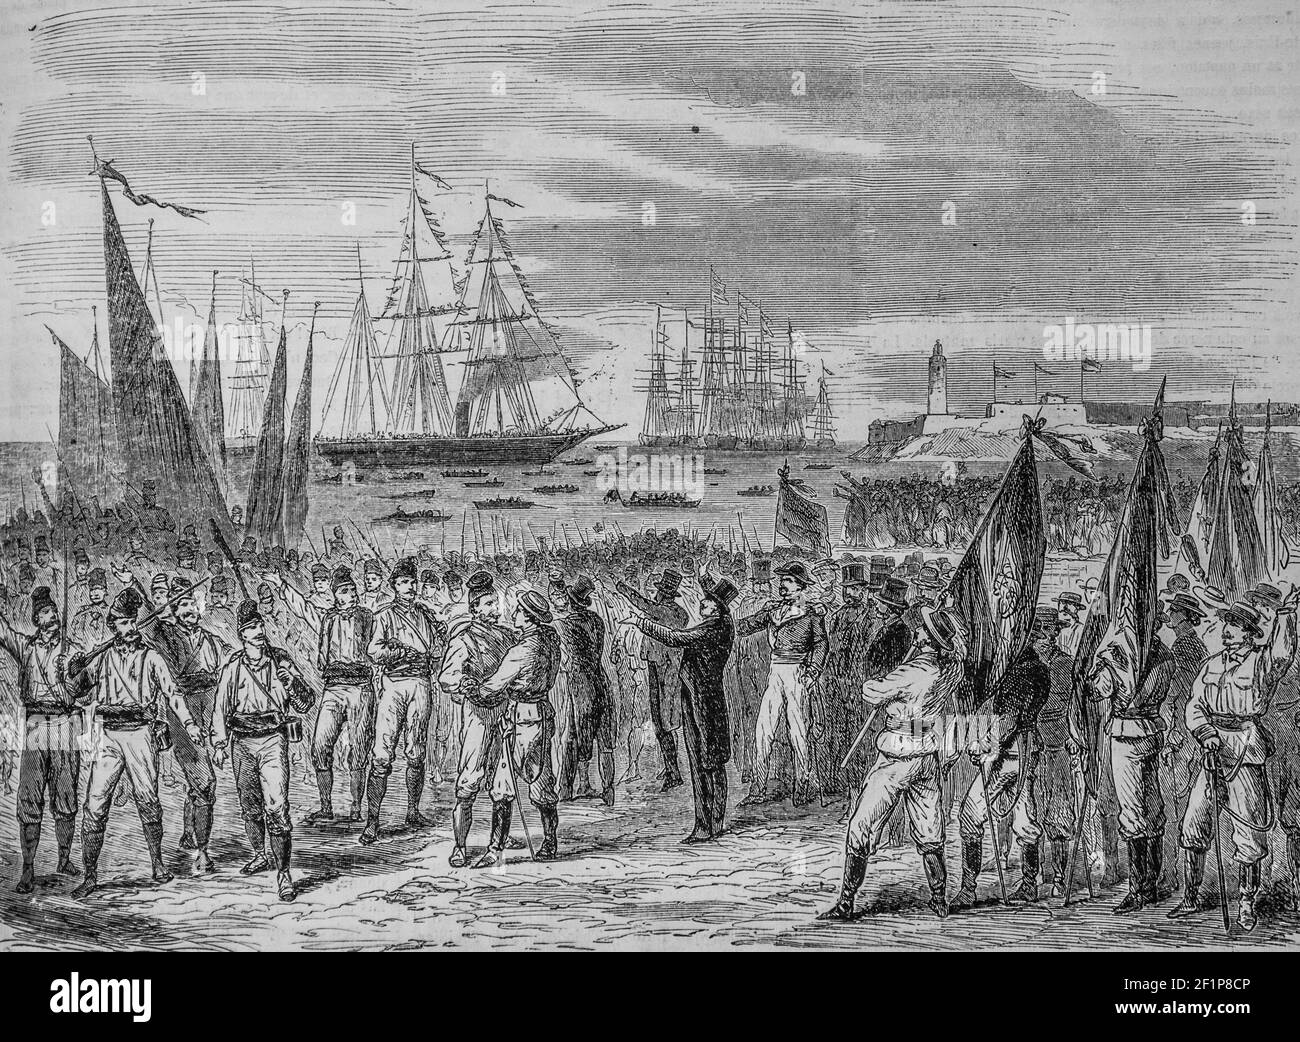 evenements de cuba debarquement des volontaires catalans a la havane, l'univers illustre,editeur michele levy 1869 Foto Stock